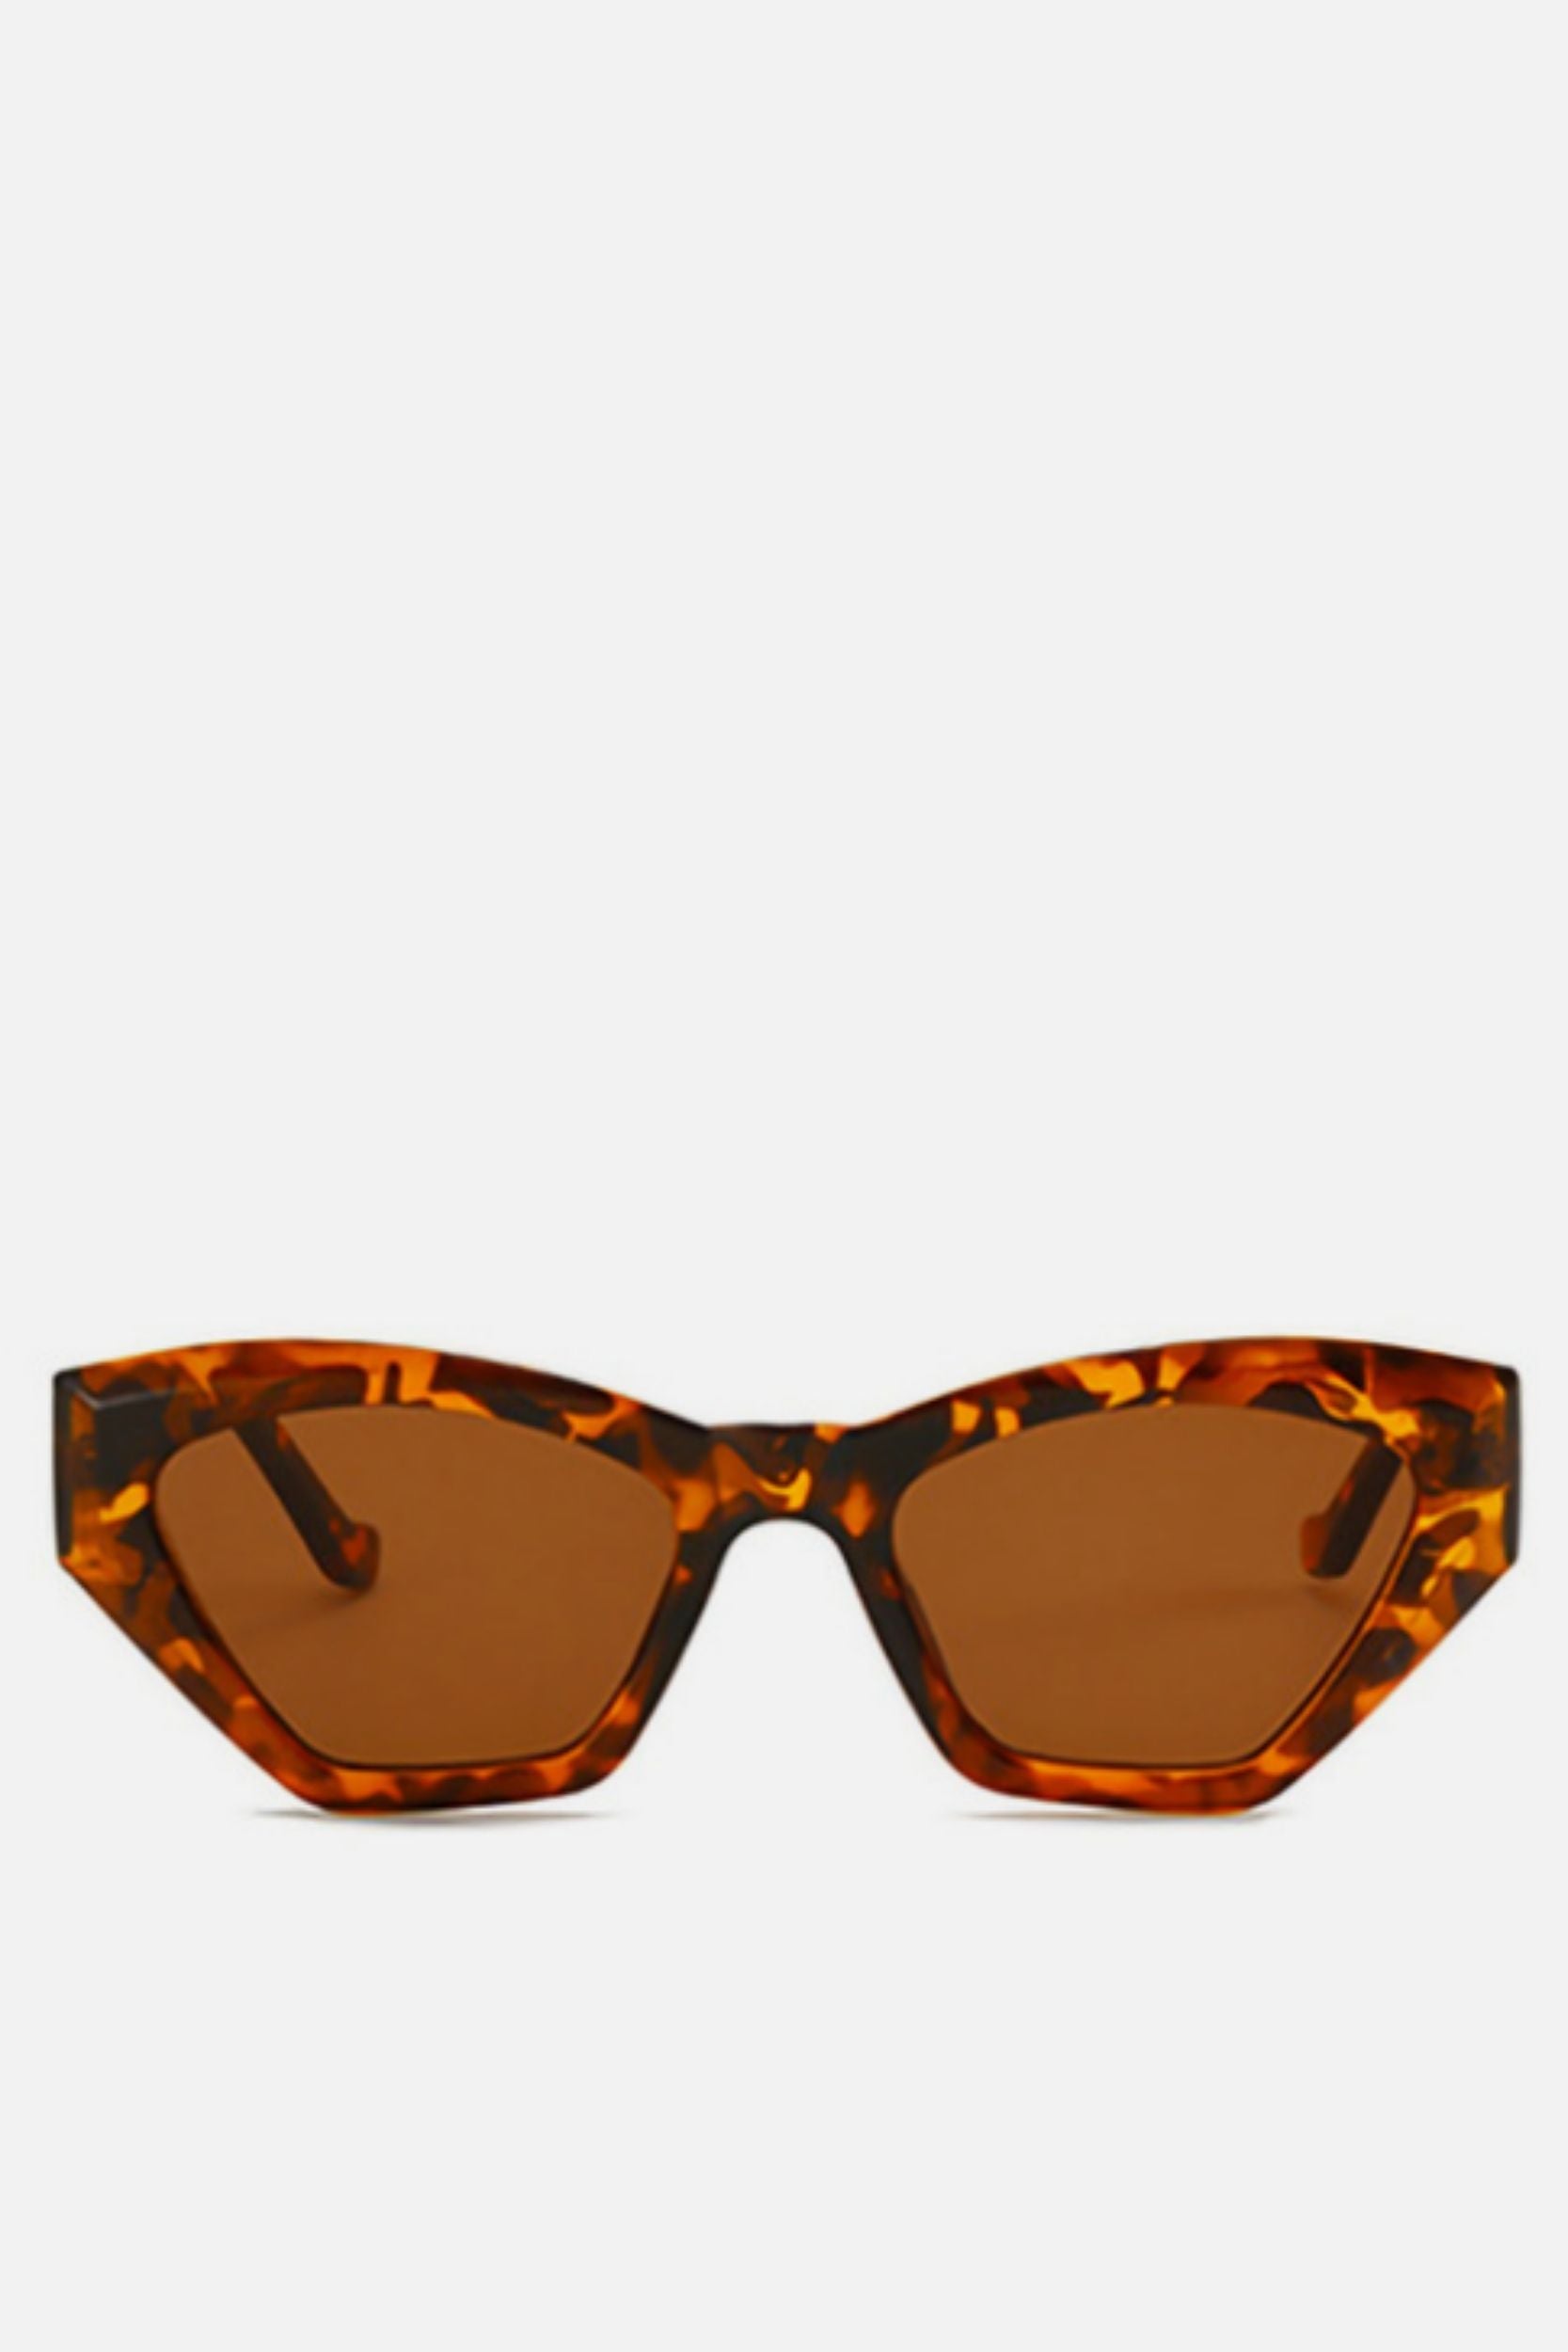 BARCELONA Tortoise Shell Cat Eye Sunglasses